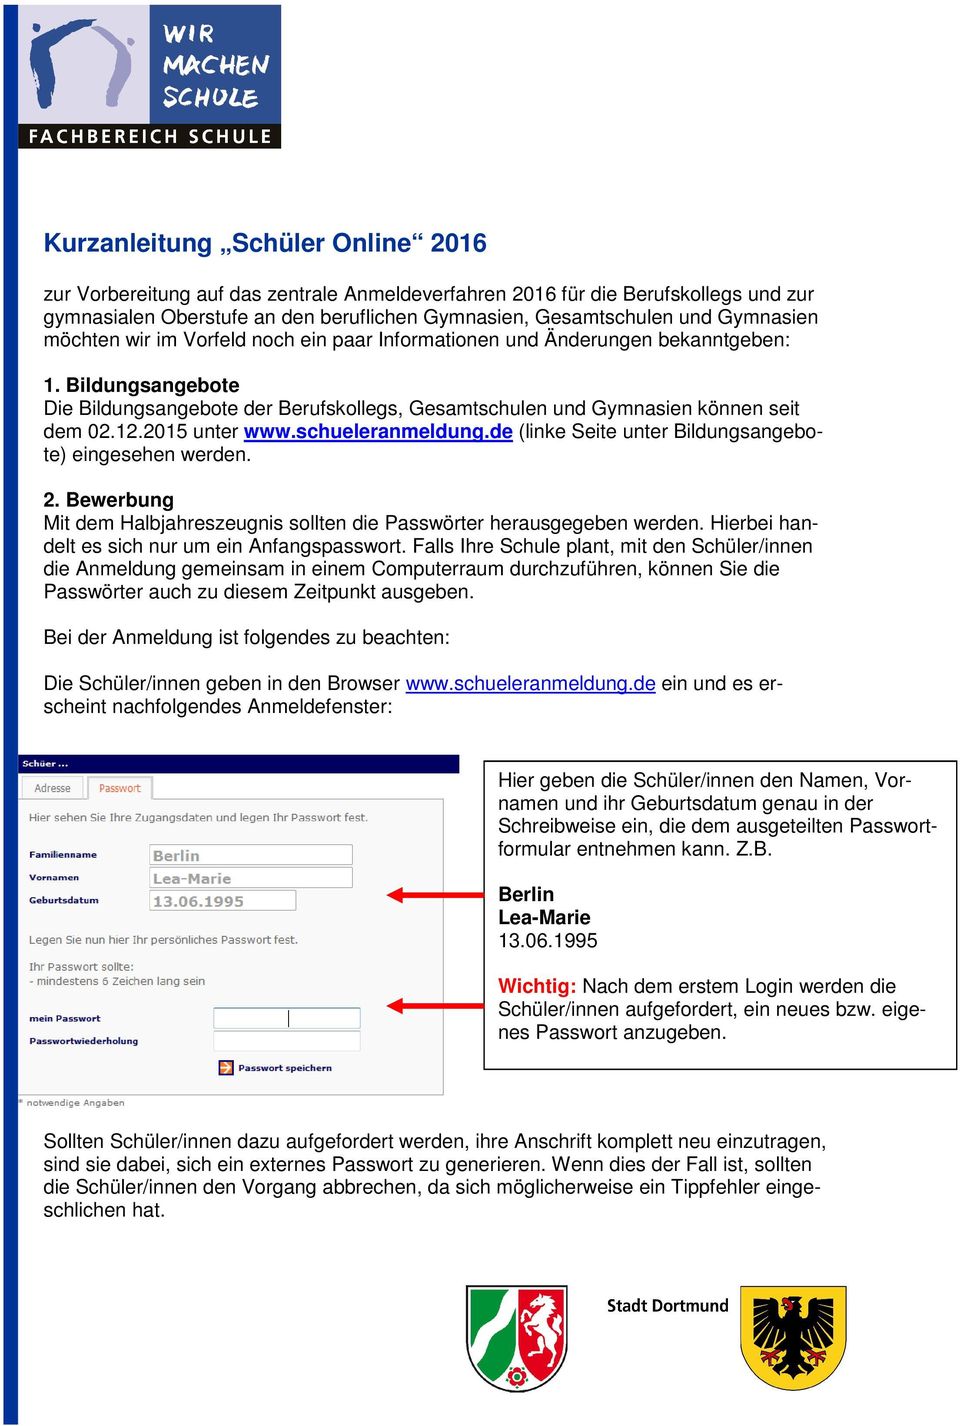 2015 unter www.schueleranmeldung.de (linke Seite unter Bildungsangebote) eingesehen werden. 2. Bewerbung Mit dem Halbjahreszeugnis sollten die Passwörter herausgegeben werden.